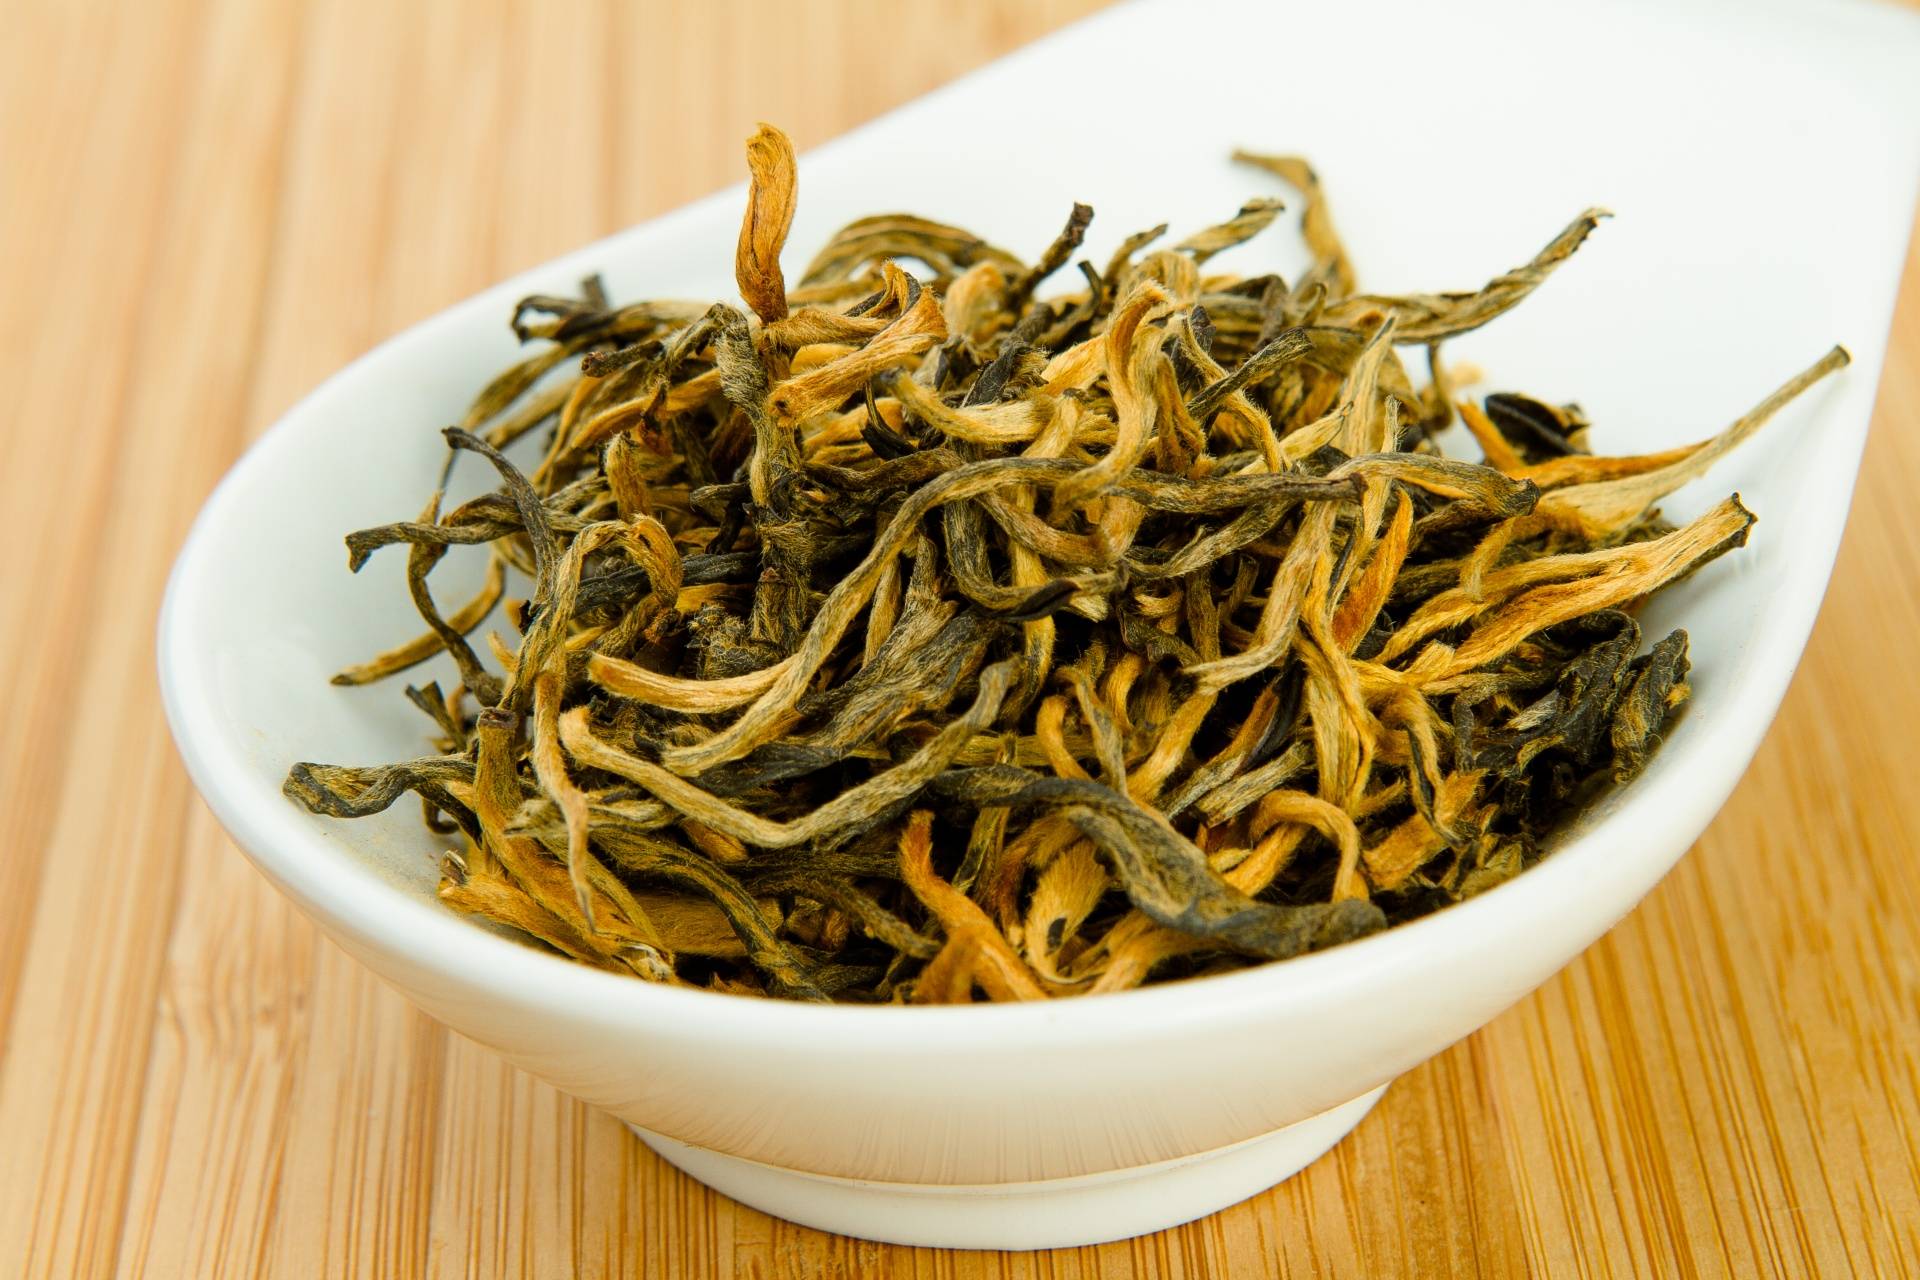 Описание чая юньнанский красный чай - чайгик